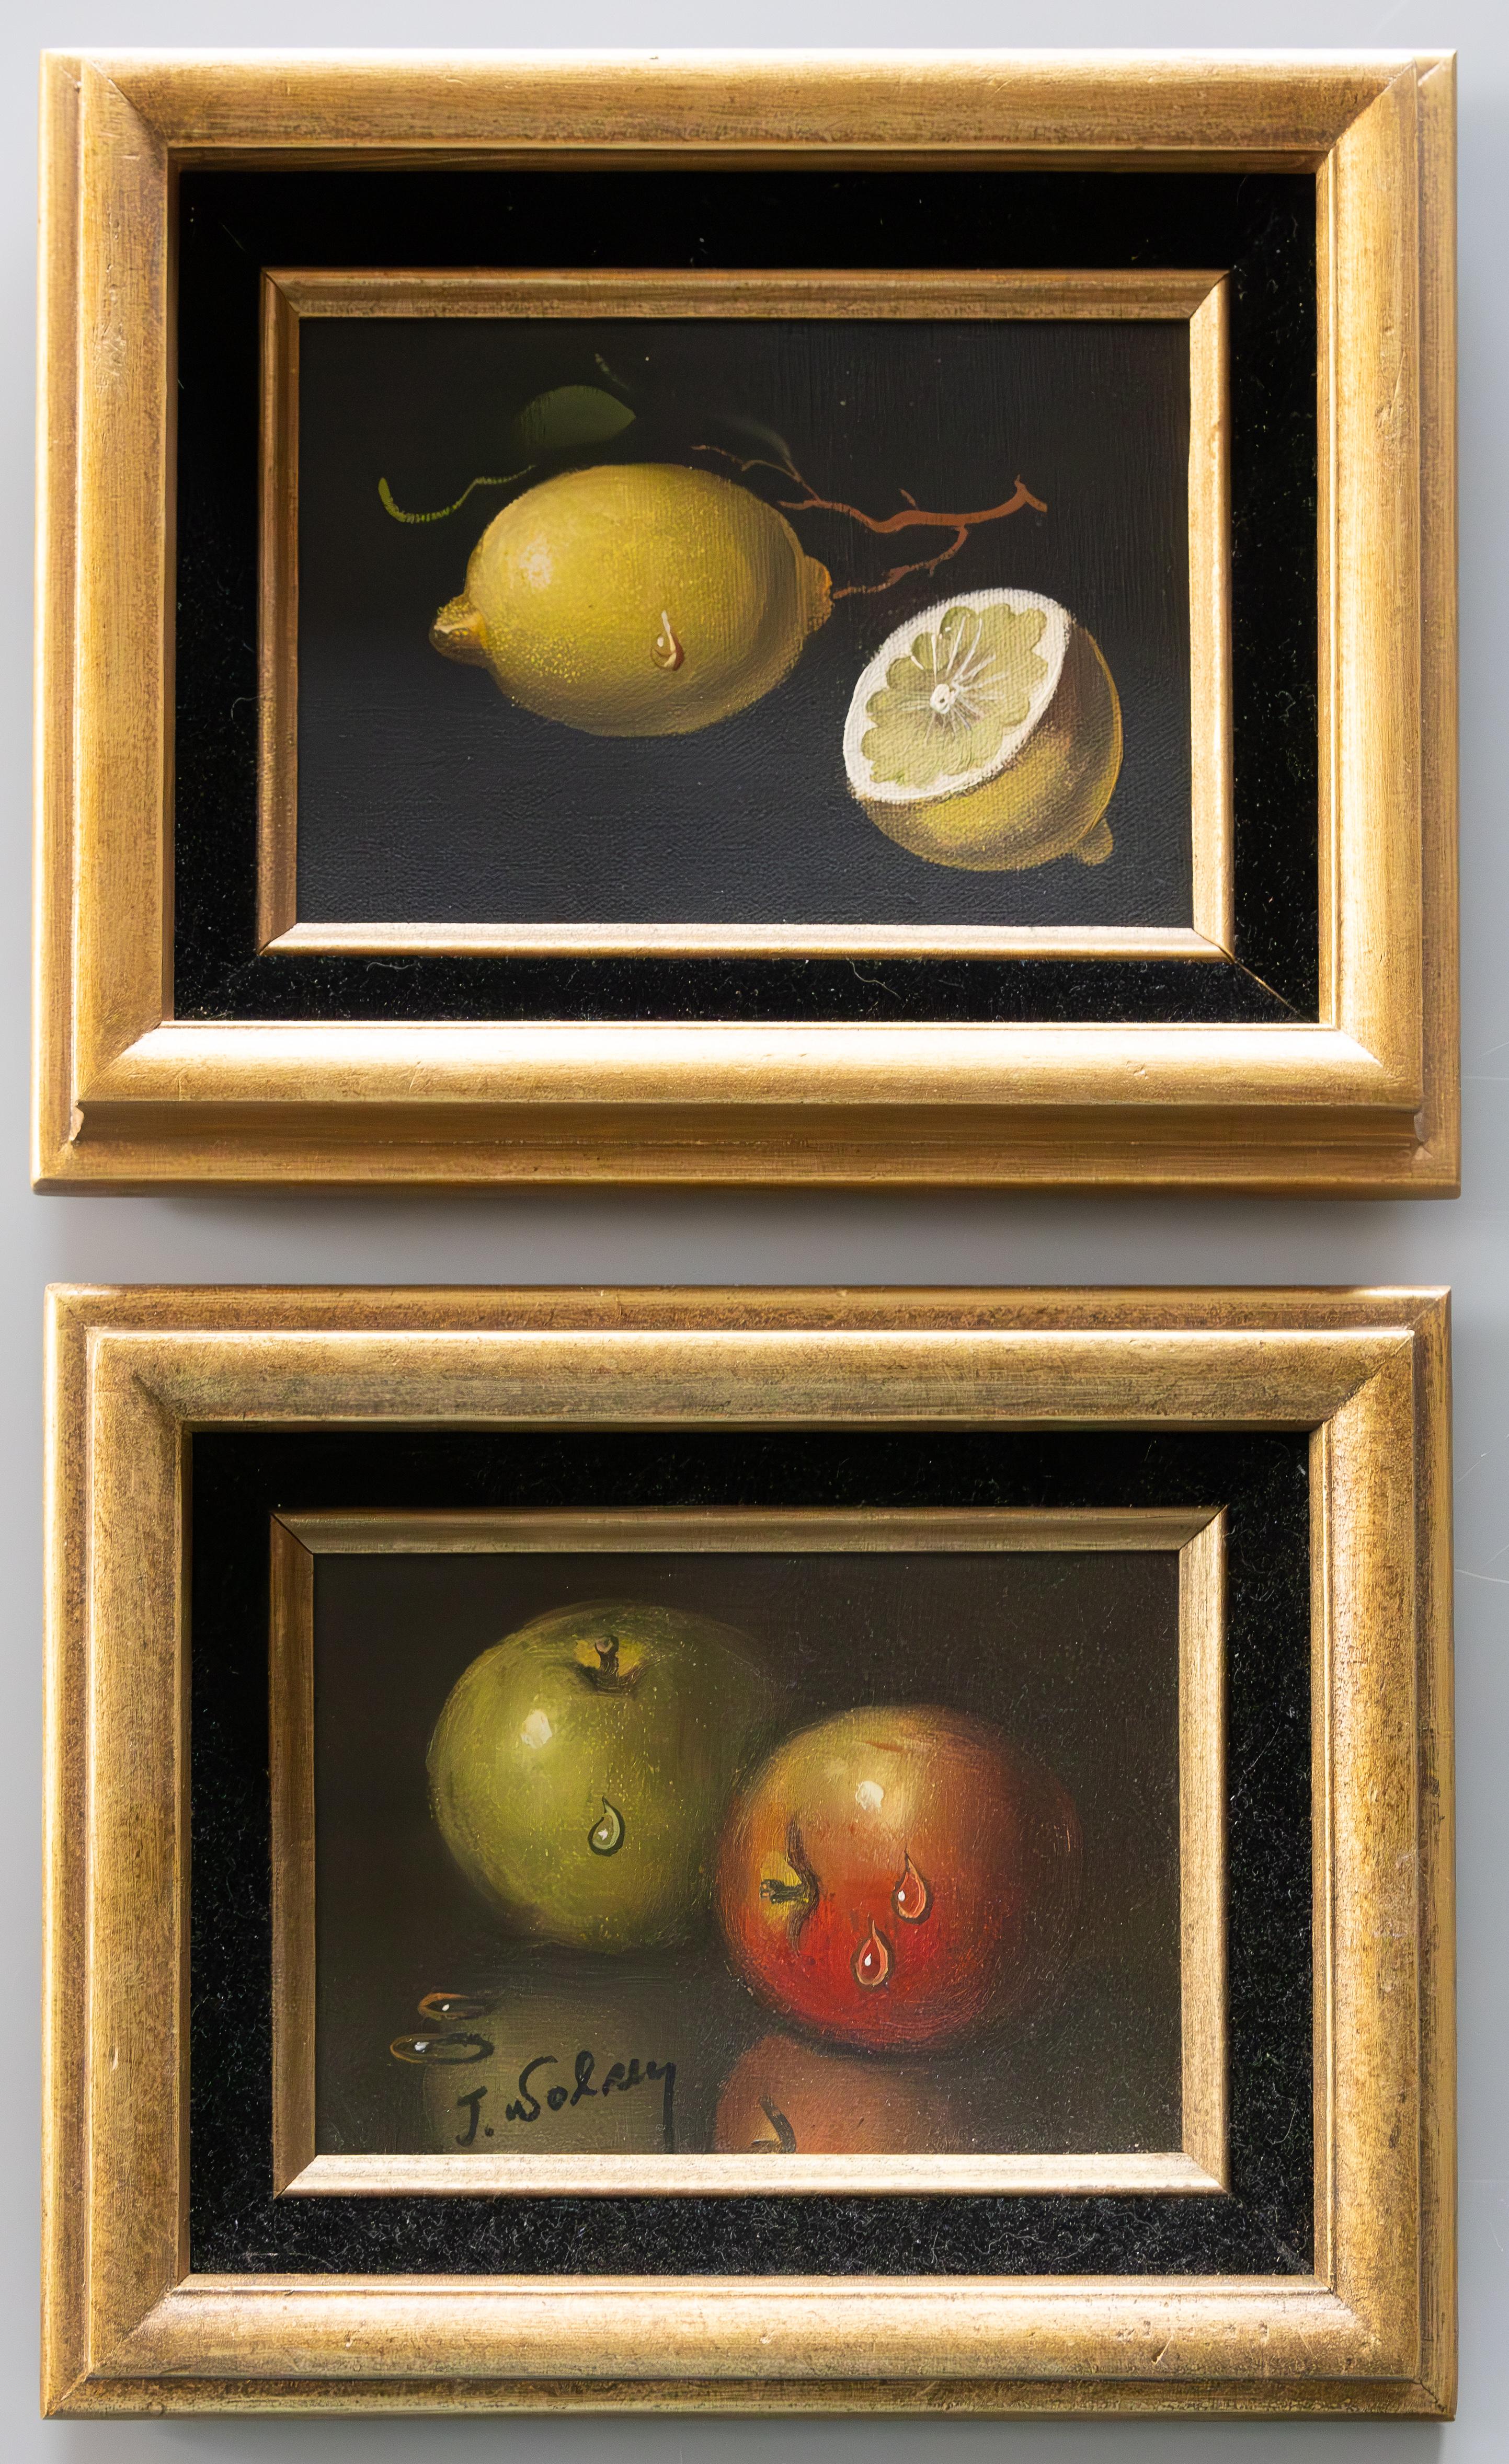 Hübsches Gemäldepaar, das glitzernde Zitronen und Äpfel darstellt. Öl auf Leinwand mit Kartonrücken. Das Gemälde mit Äpfeln ist signiert, die Signatur ist undeutlich.  Die Rahmen sind mit schwarzem Samt ausgeschlagen und leicht vergoldet. Das